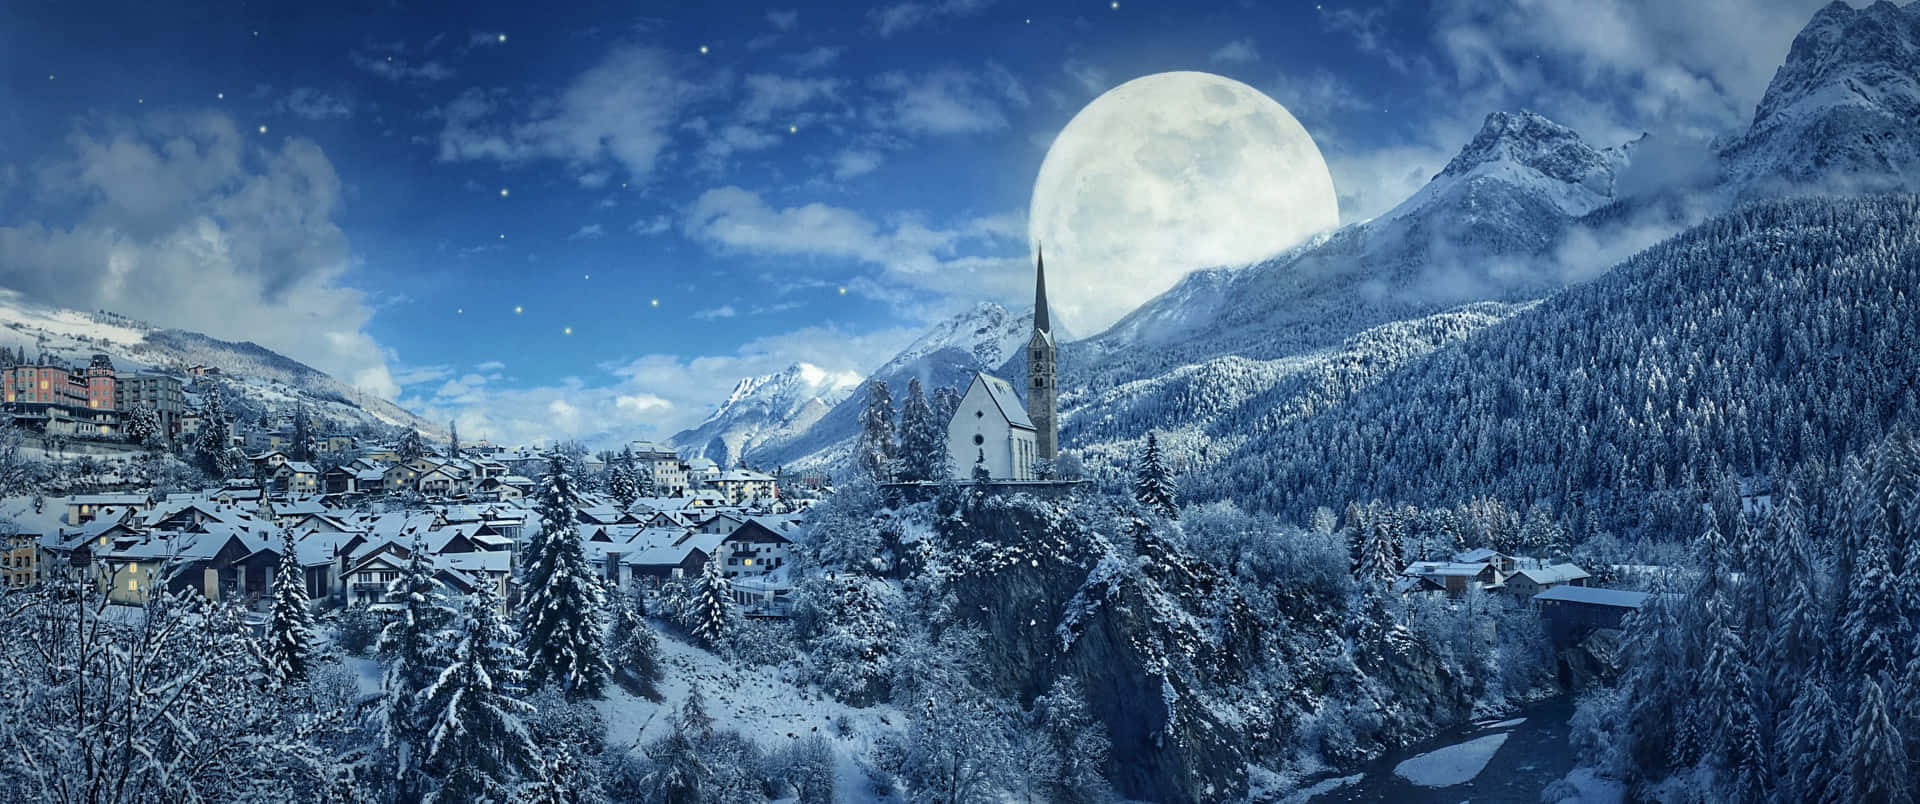 Einsamebank Mit Blick Auf Eine Malerische Winterlandschaft Wallpaper